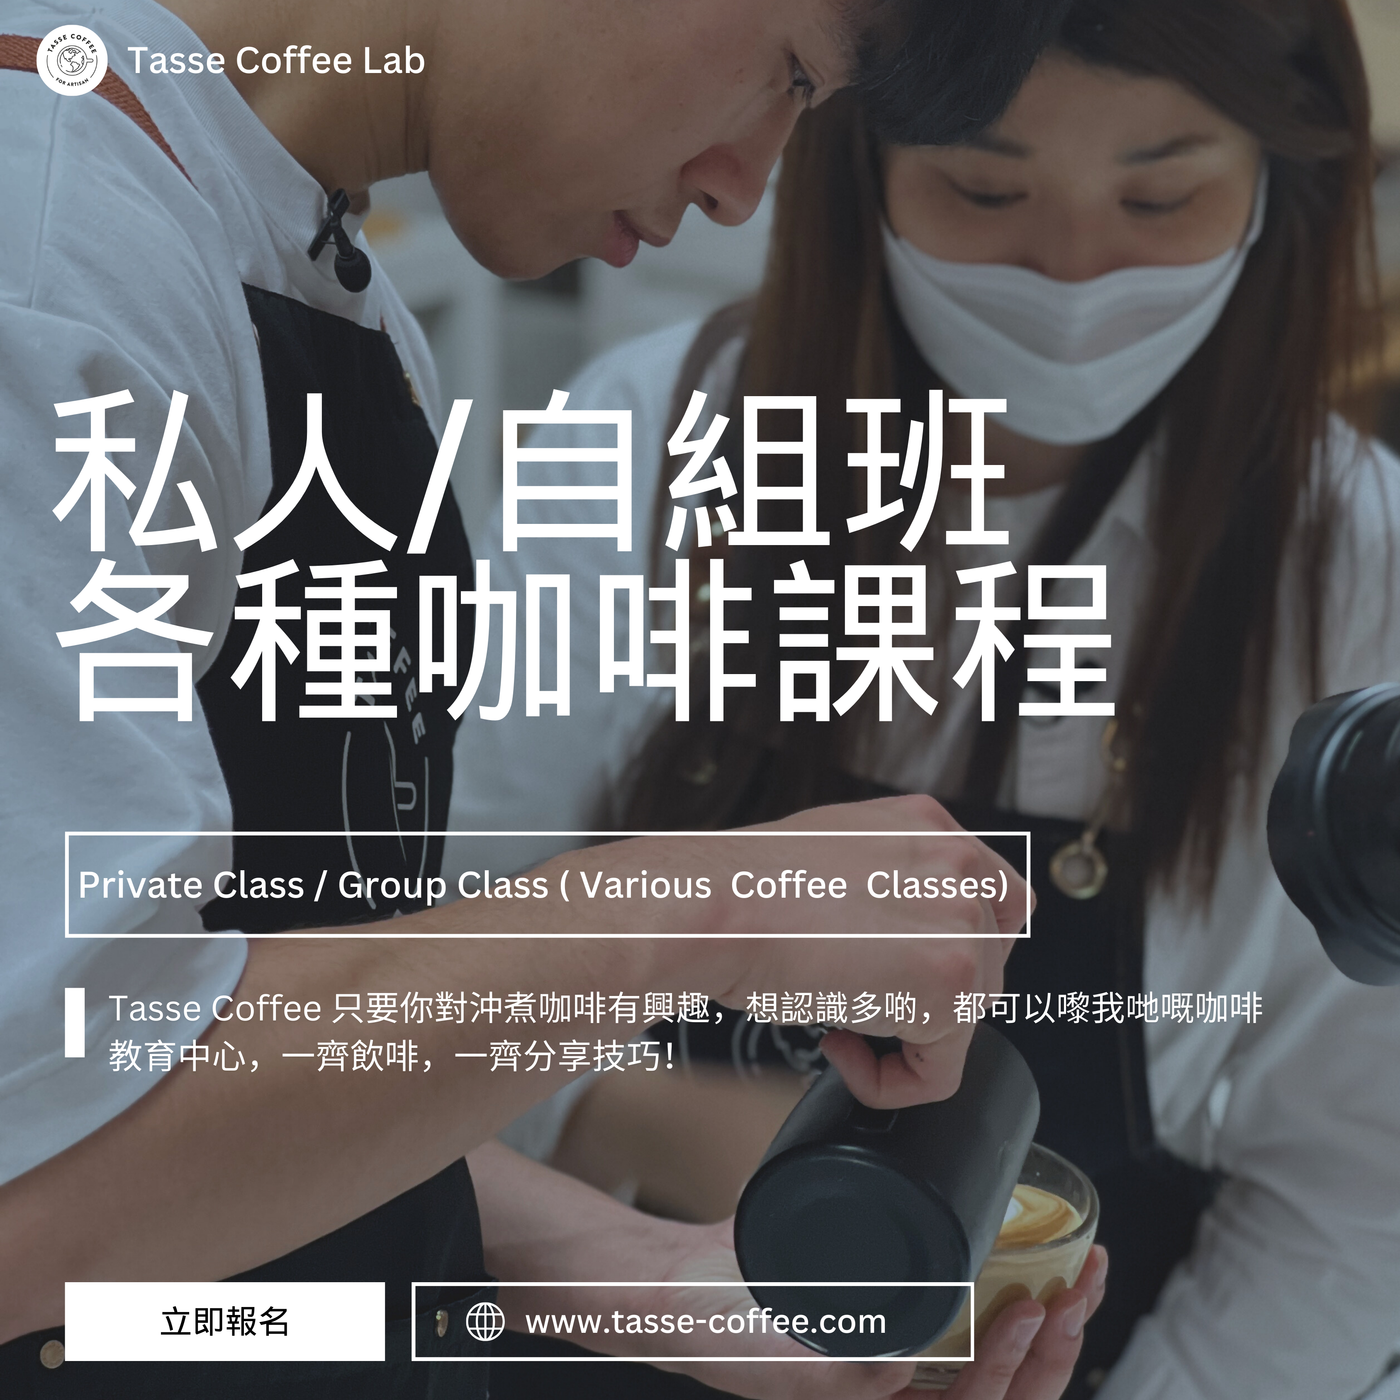 プライベートクラス・グループクラス｜各種コーヒー教室